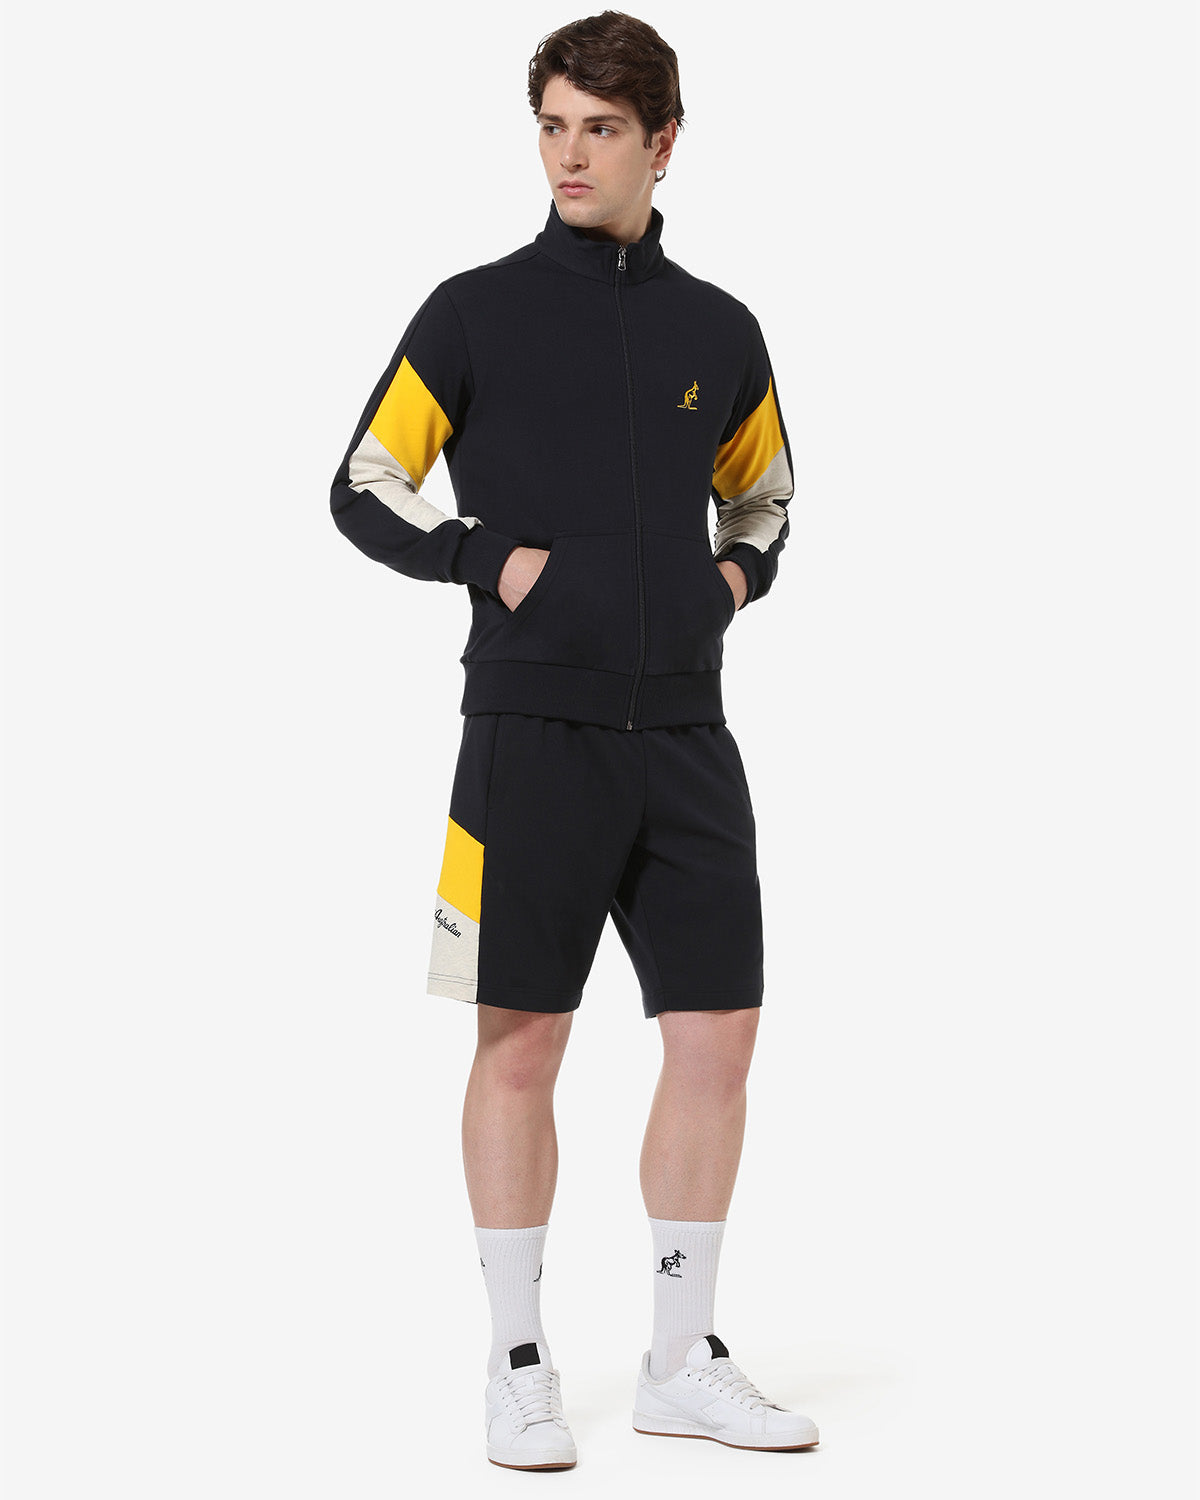 Icon Short: Australian Sportswear